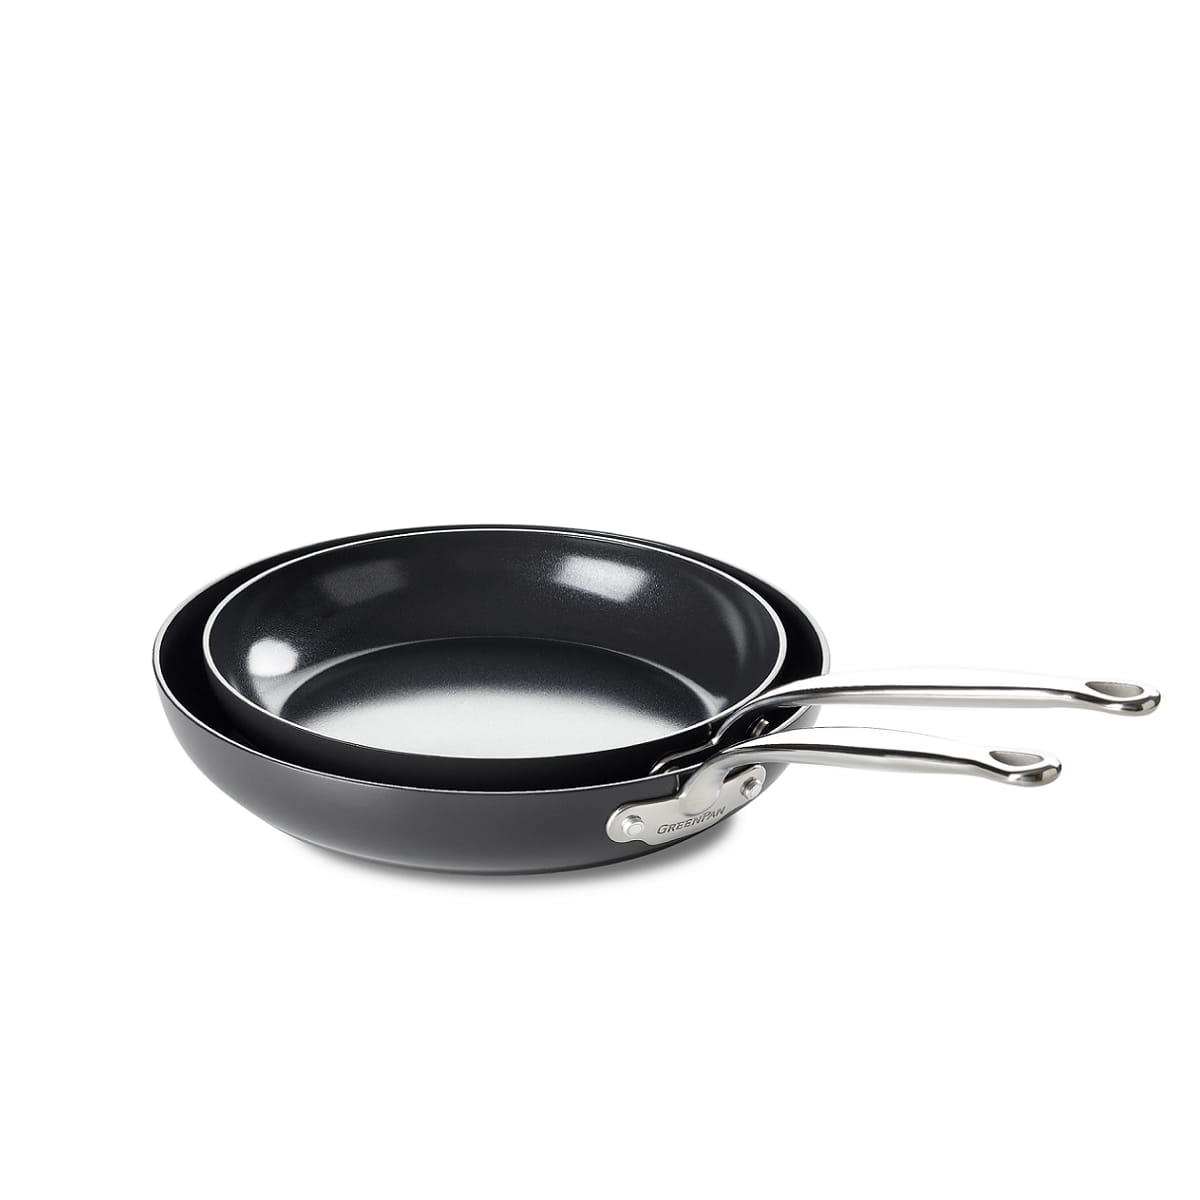 CC001865-001 - Barcelona 2pc Cookware Sets, Black - 20 & 28cm - Product Image 1